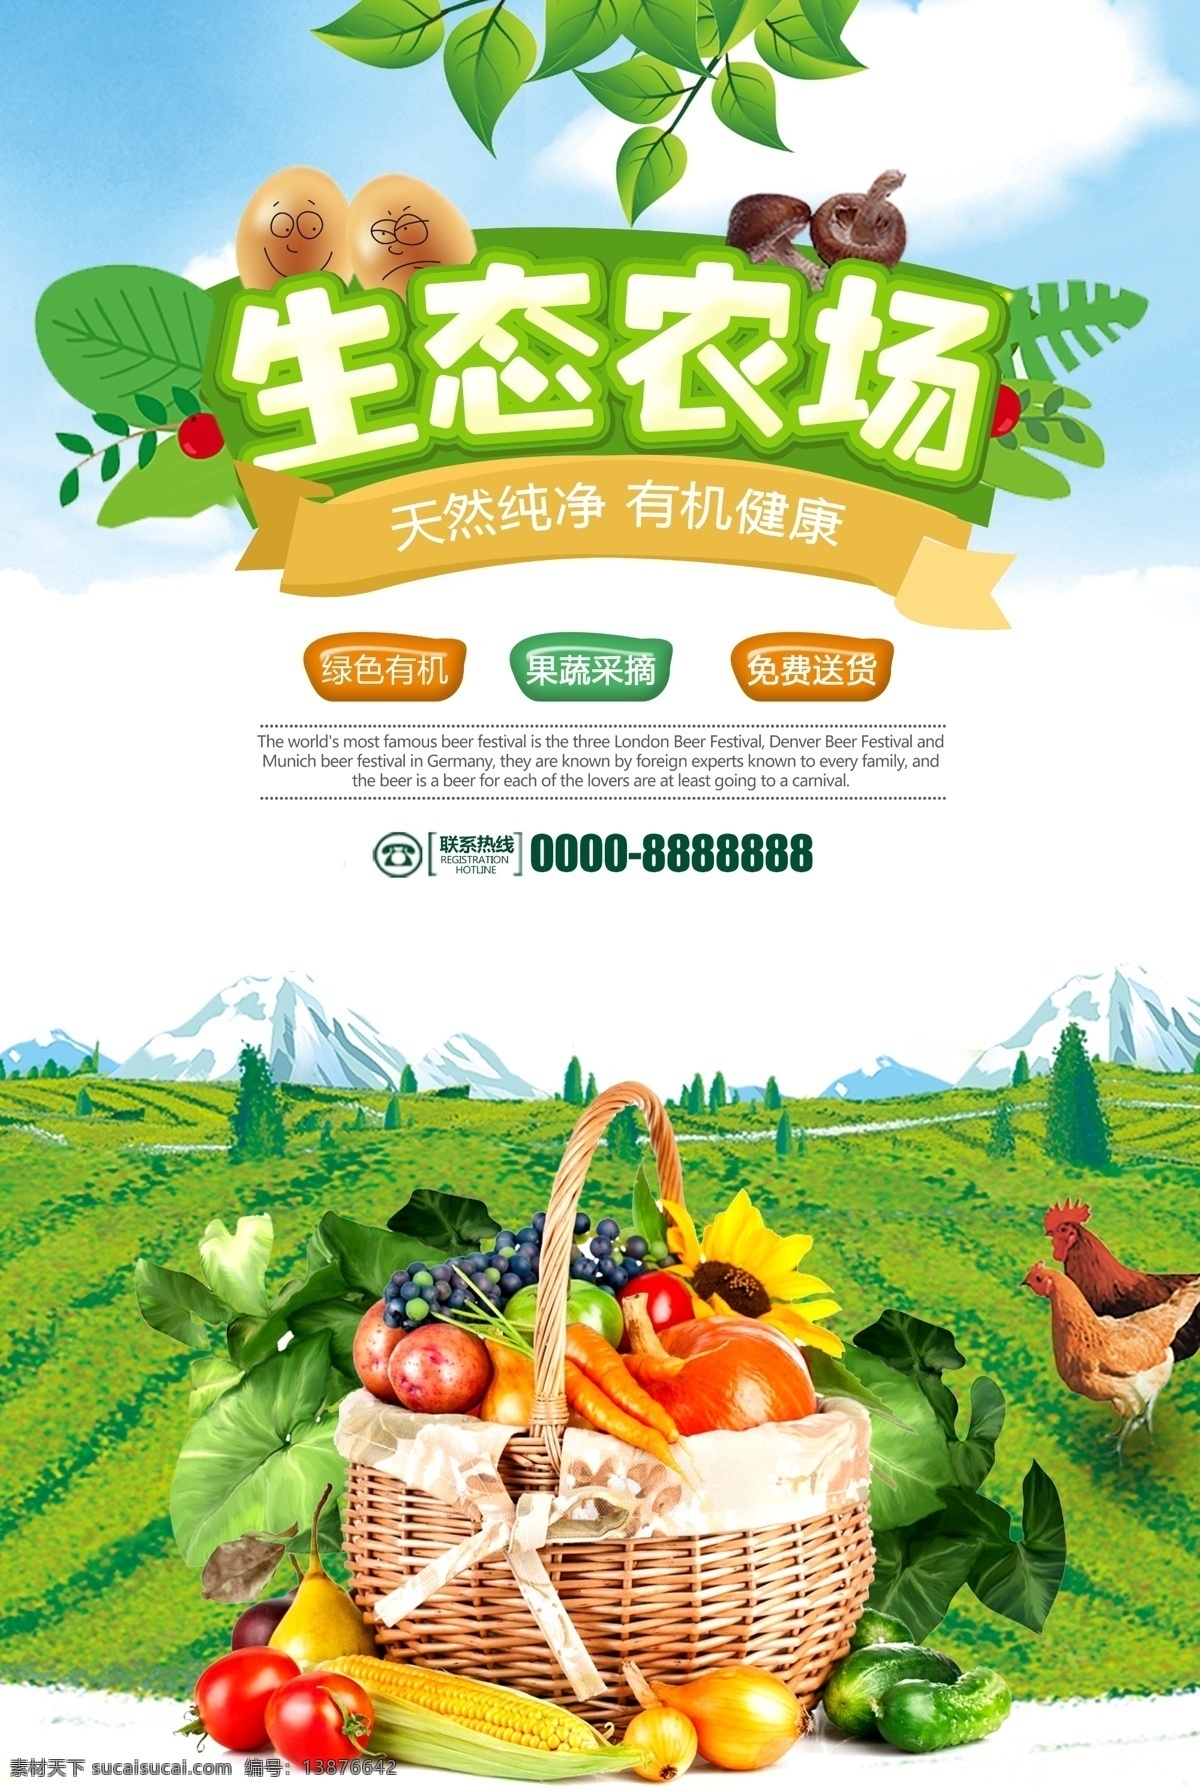 有机农场海报 绿色 绿叶 生态 有机果蔬 菜篮子 土鸡 健康 纯天然 画册传单